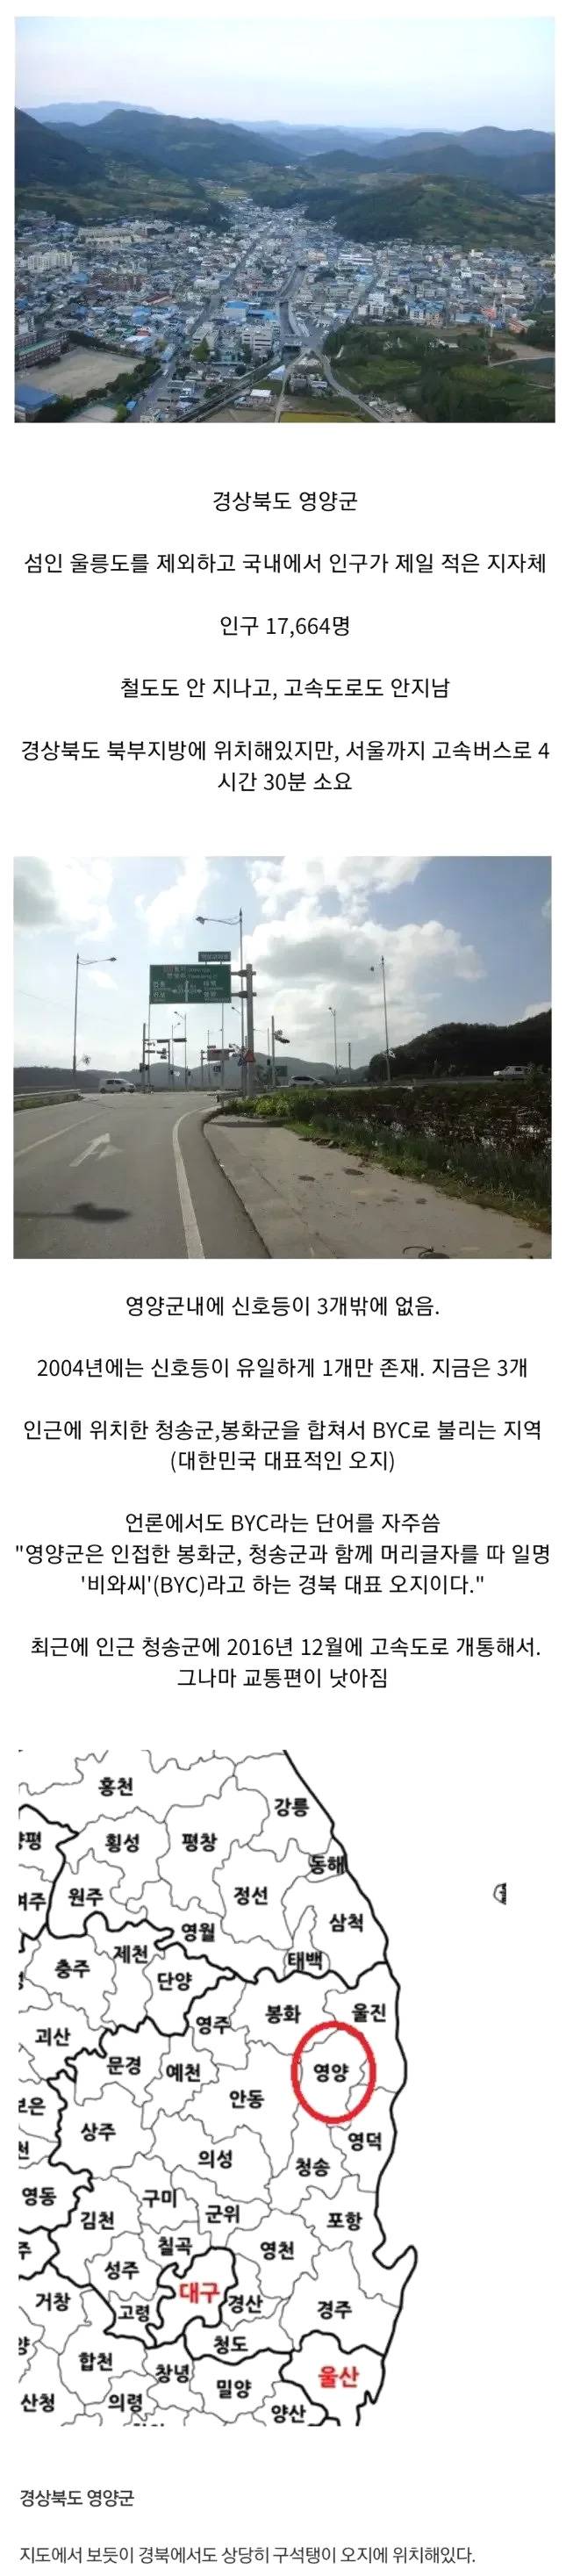  한국에서 가장 오지인 지역 중 하나